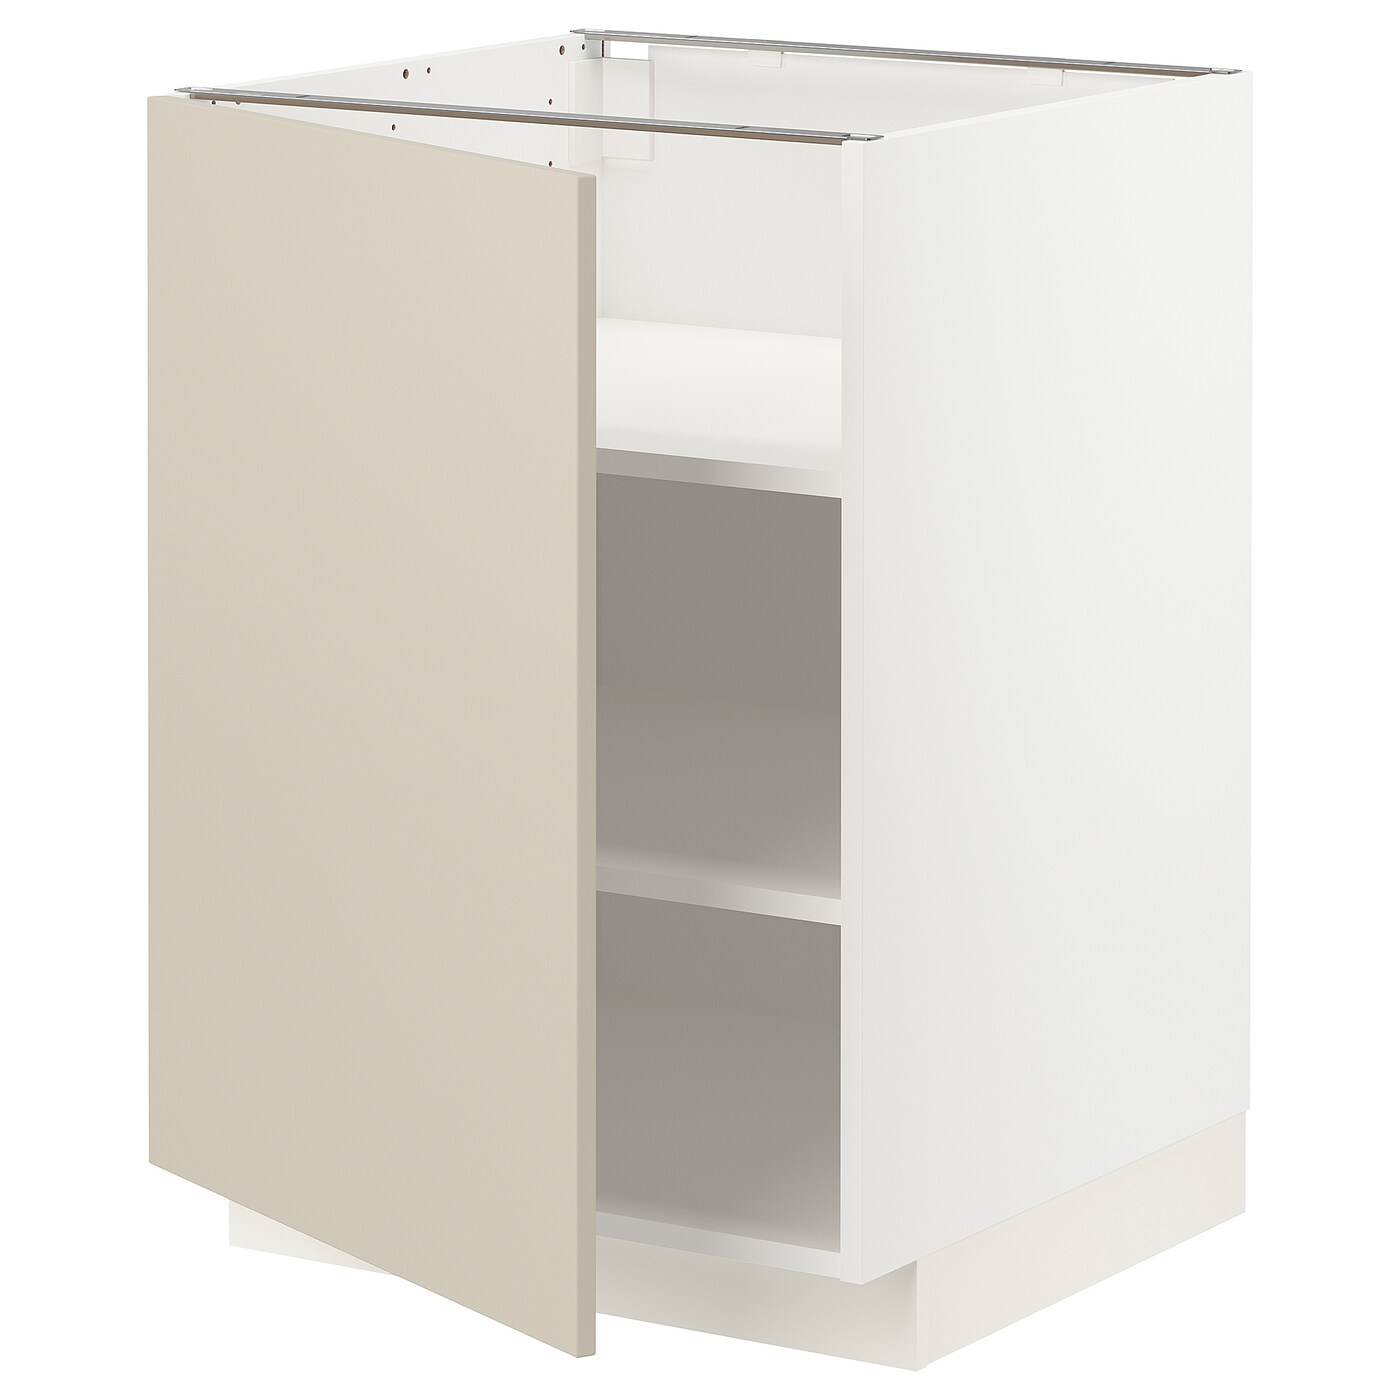 Напольный шкаф  - IKEA METOD, 88x62x60см, белый/бежевый, МЕТОД ИКЕА